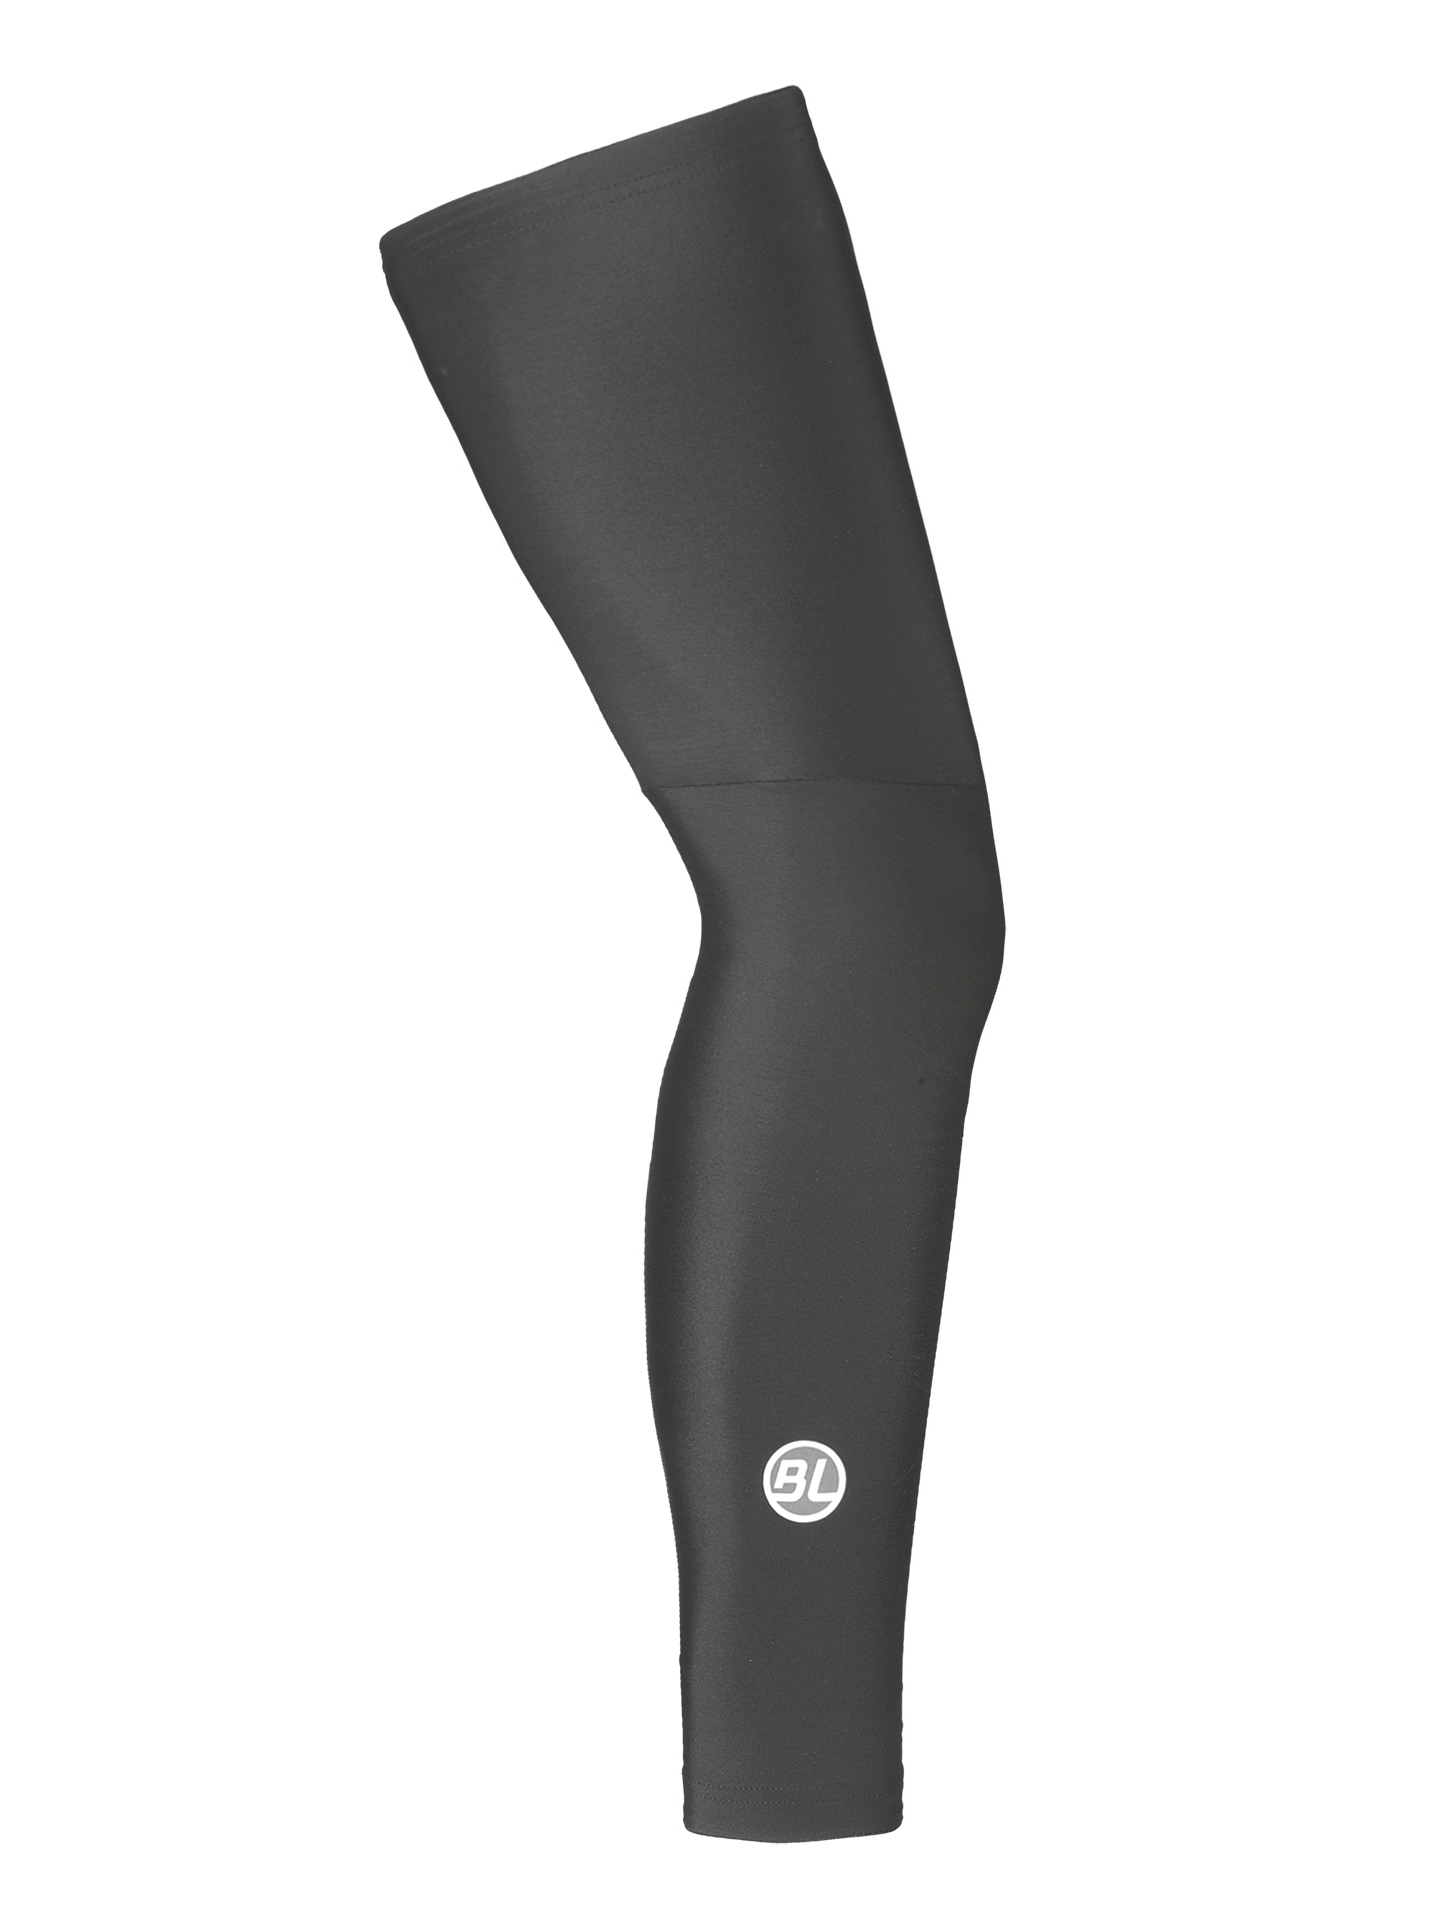 Утеплитель ног Bicycle Line FIANDRE, black (черный), M фото 